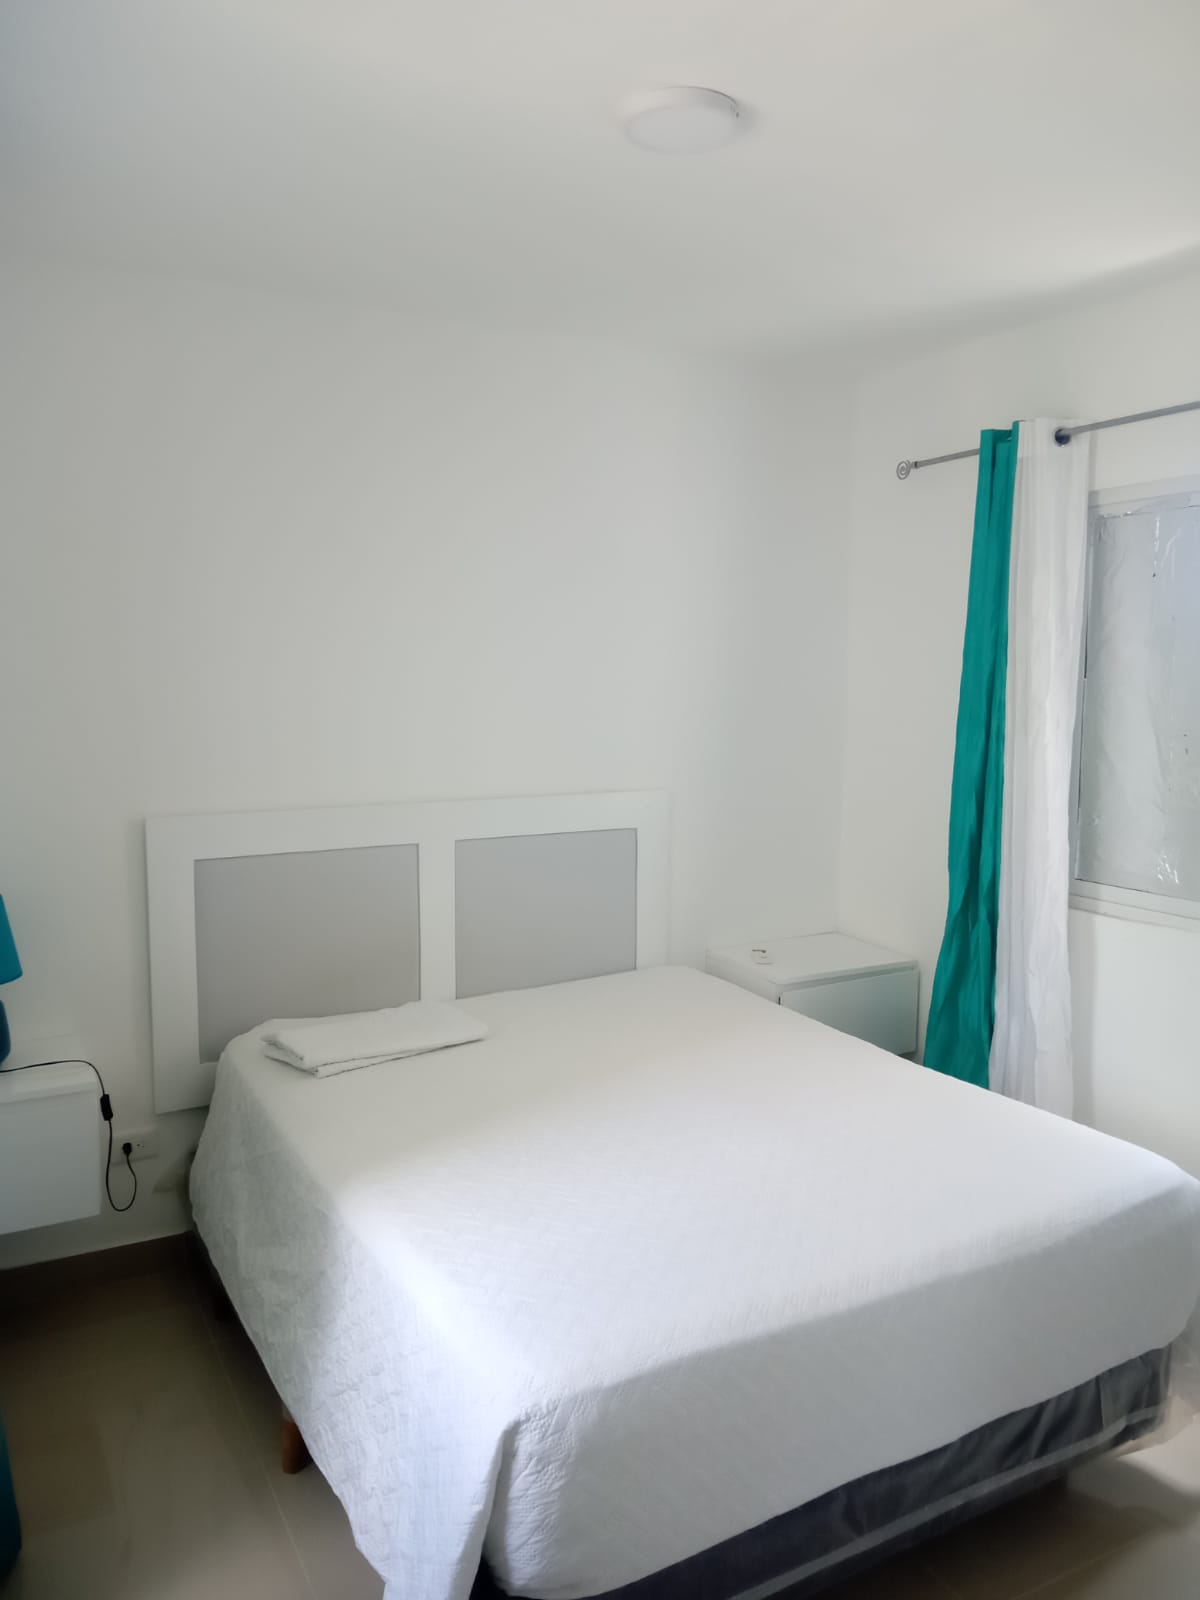 For RENT condominio de  2 dormitorios  en Serena village  Resort  Cerc Foto 7219091-q8.jpg